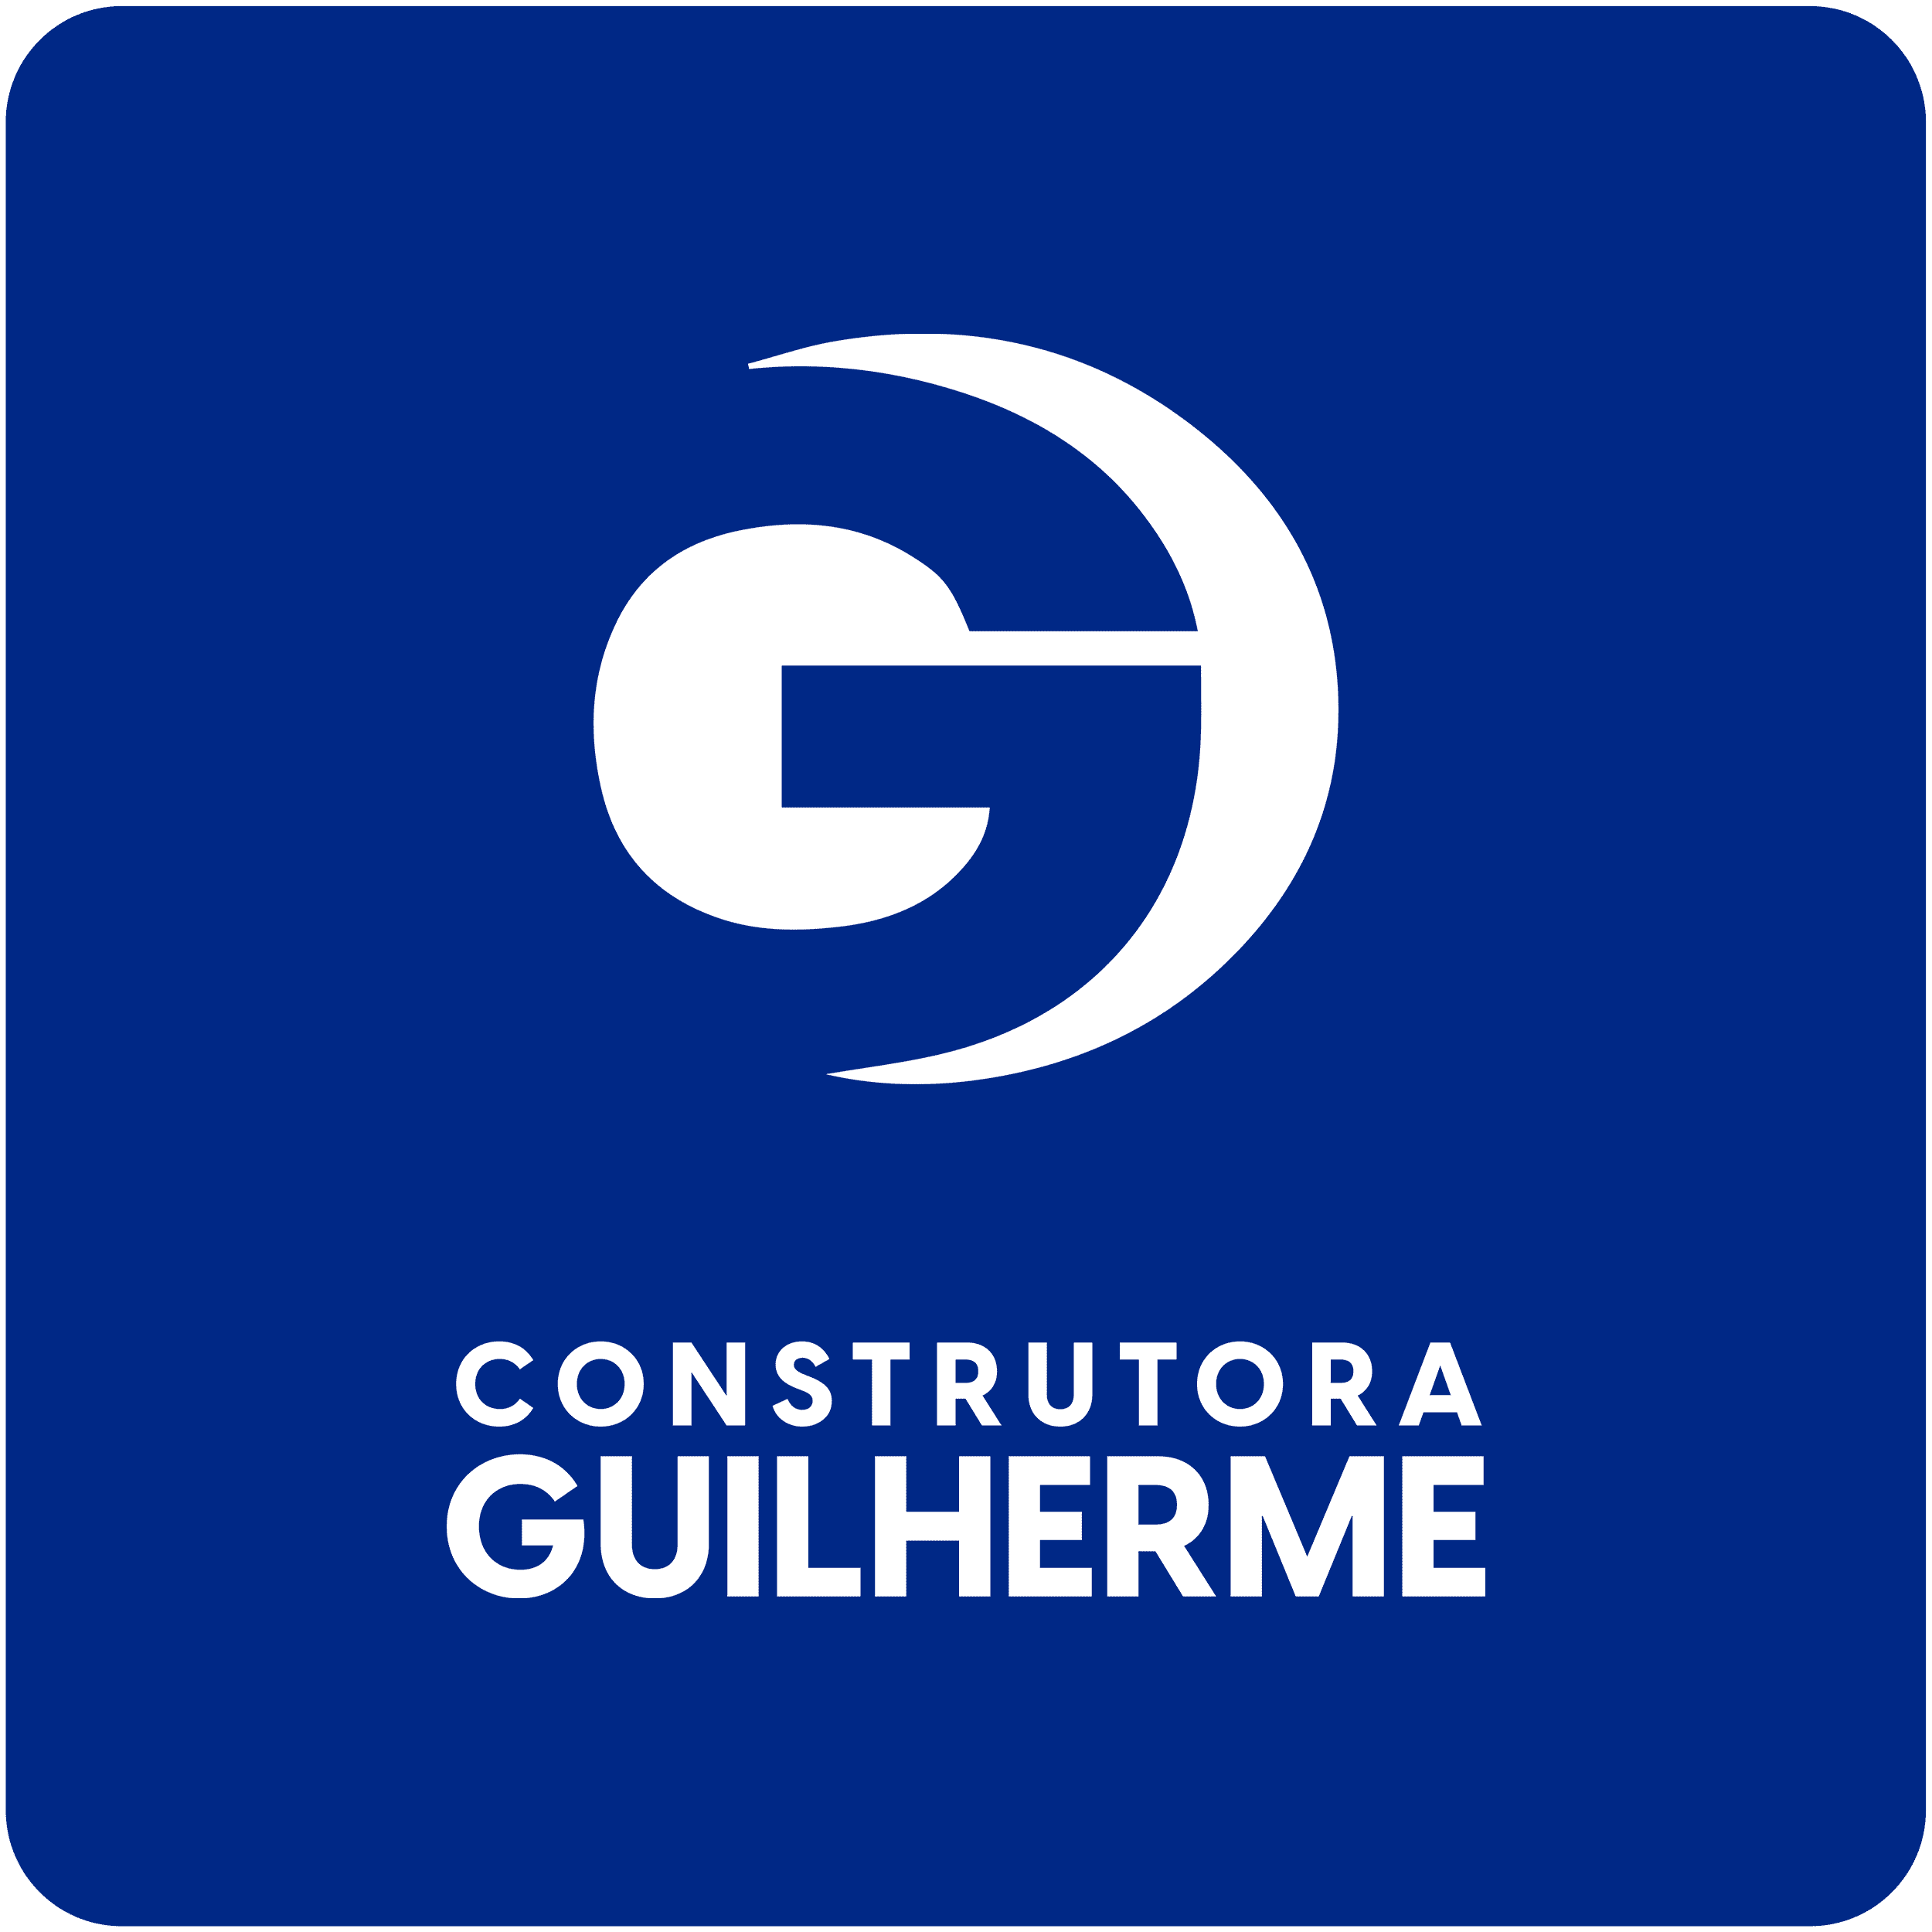 (c) Construtoraguilherme.com.br